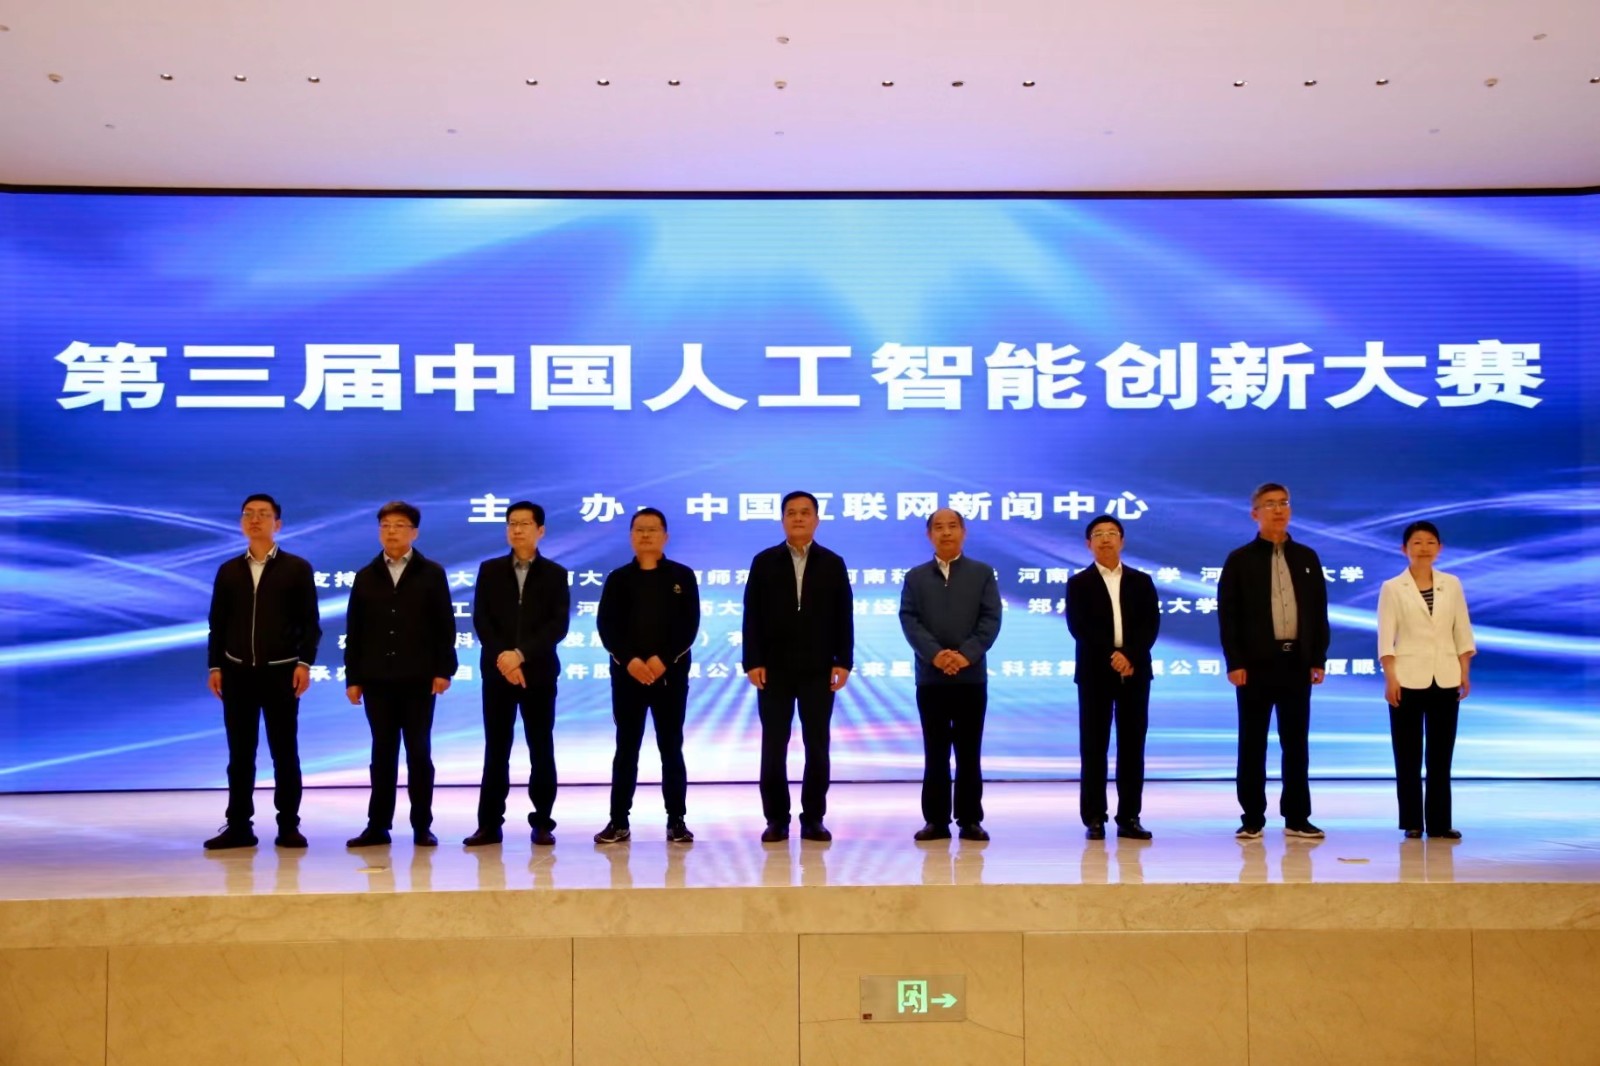 第三届中国人工智能创新大赛在郑州举办- 老家河南网